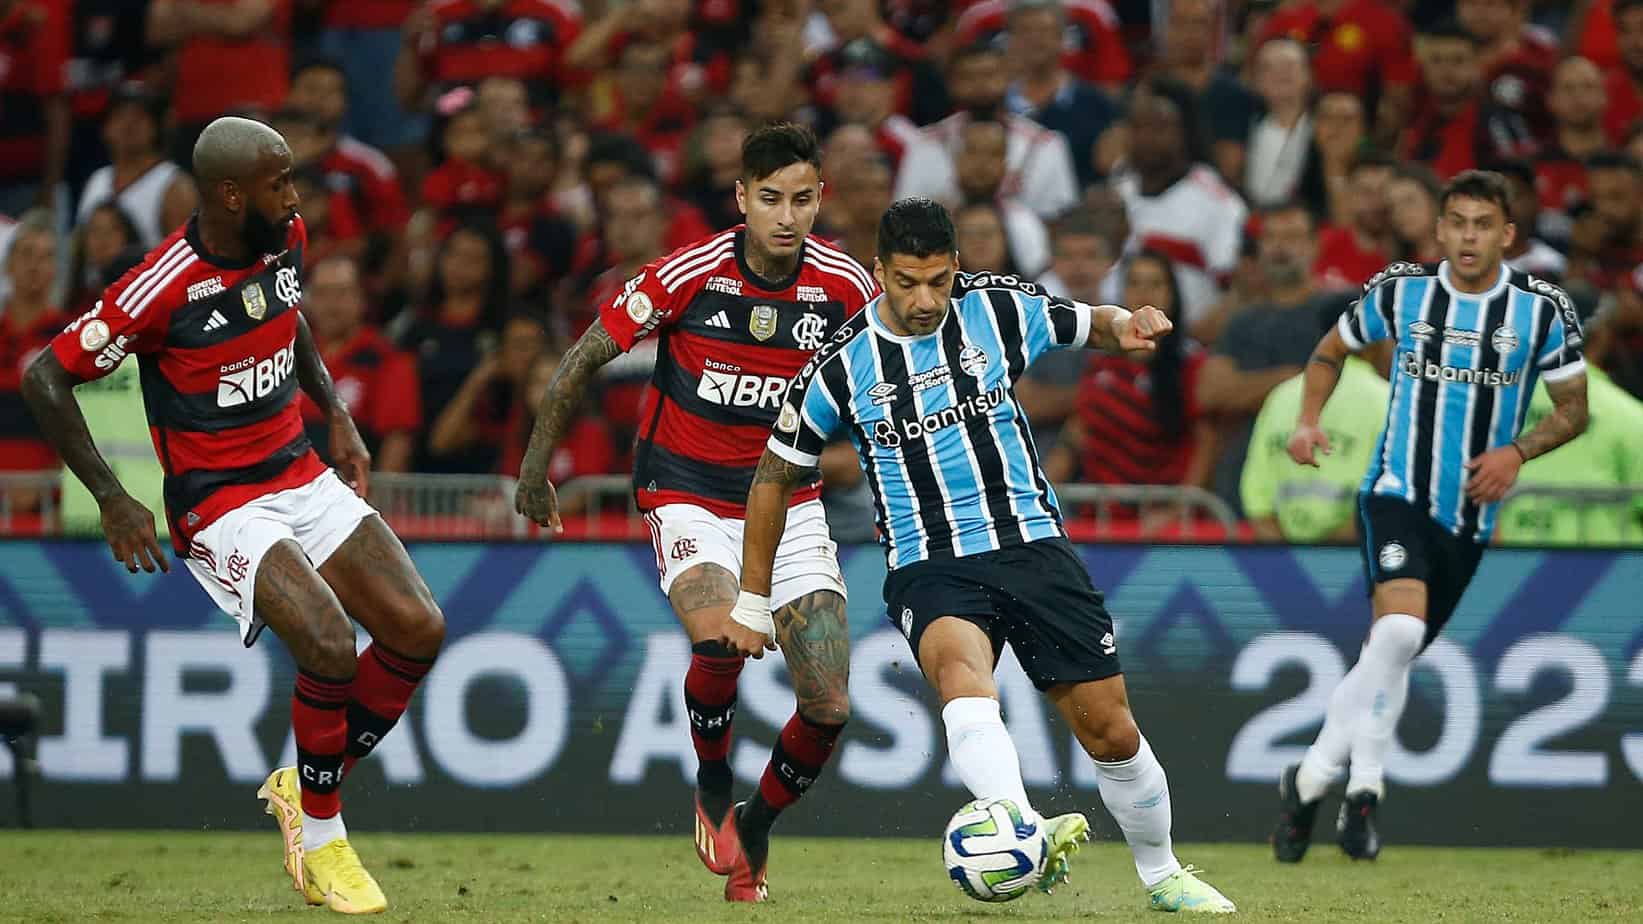 Grêmio vs. Flamengo Preview and Free Pick